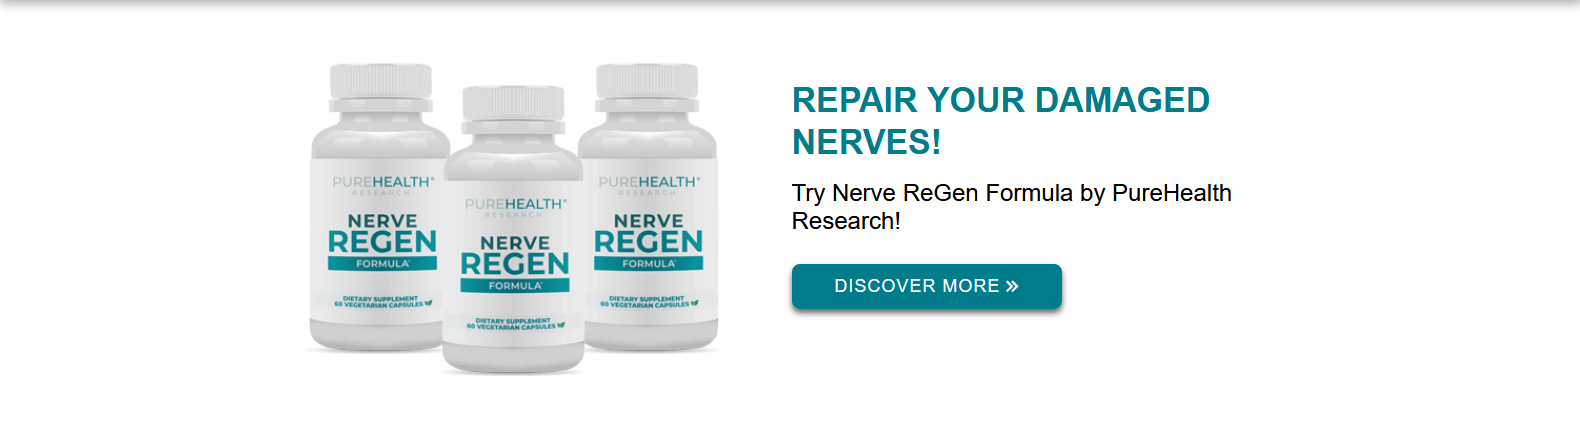 Nerve-Regen-Formula-Reviews